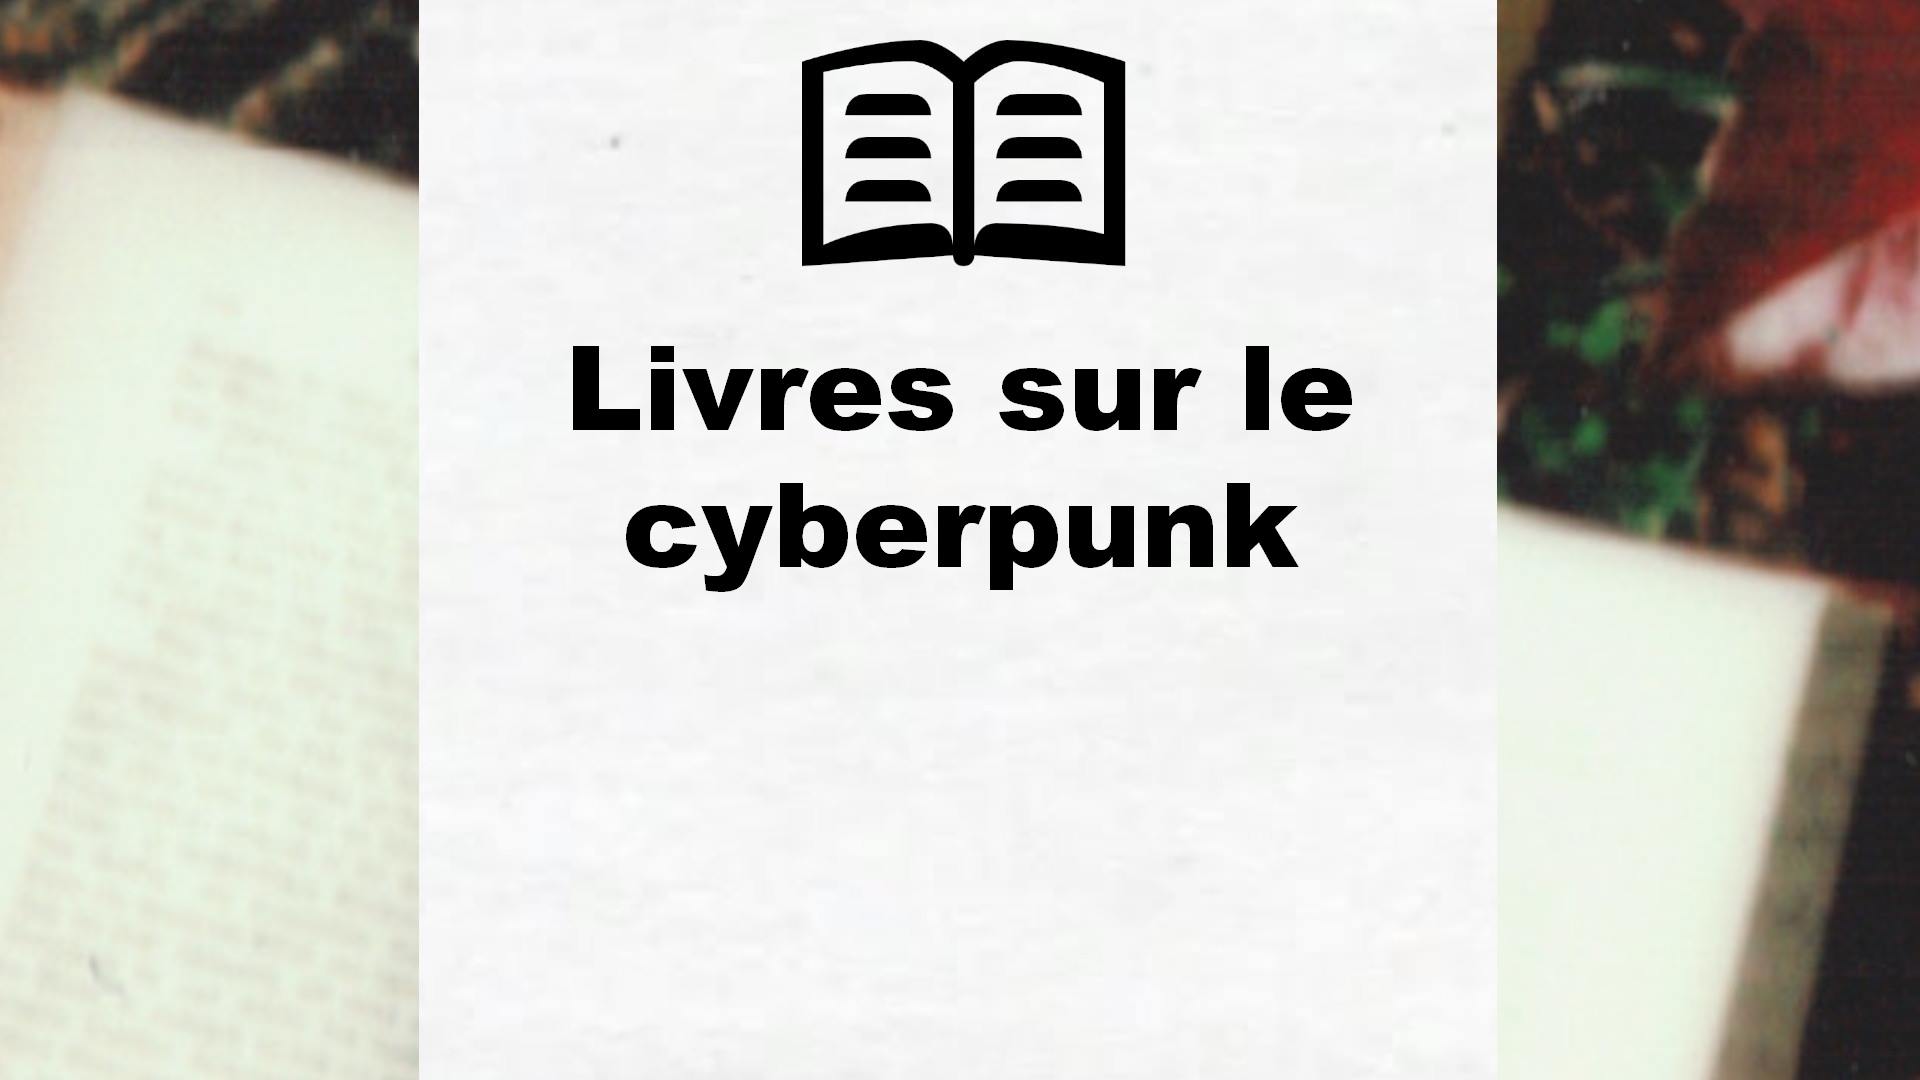 Livres sur le cyberpunk